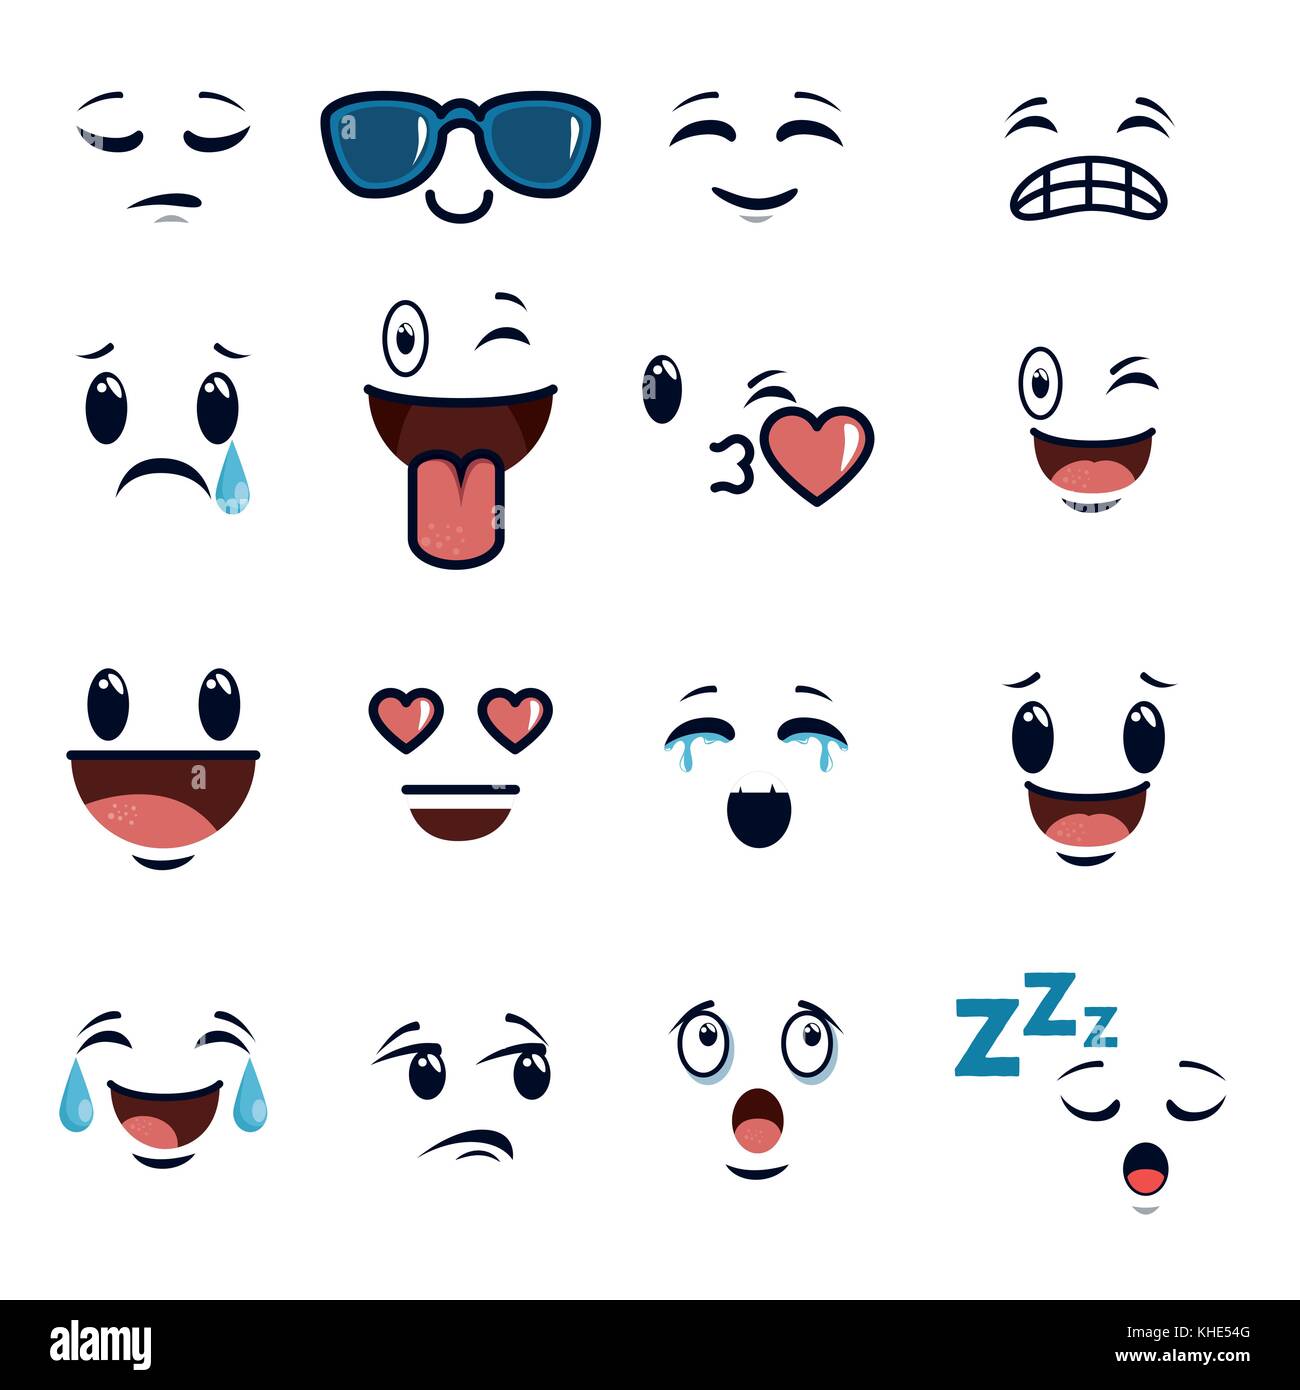 cute faces doodle emoji cartoon Stock Vector Image & Art - Alamy